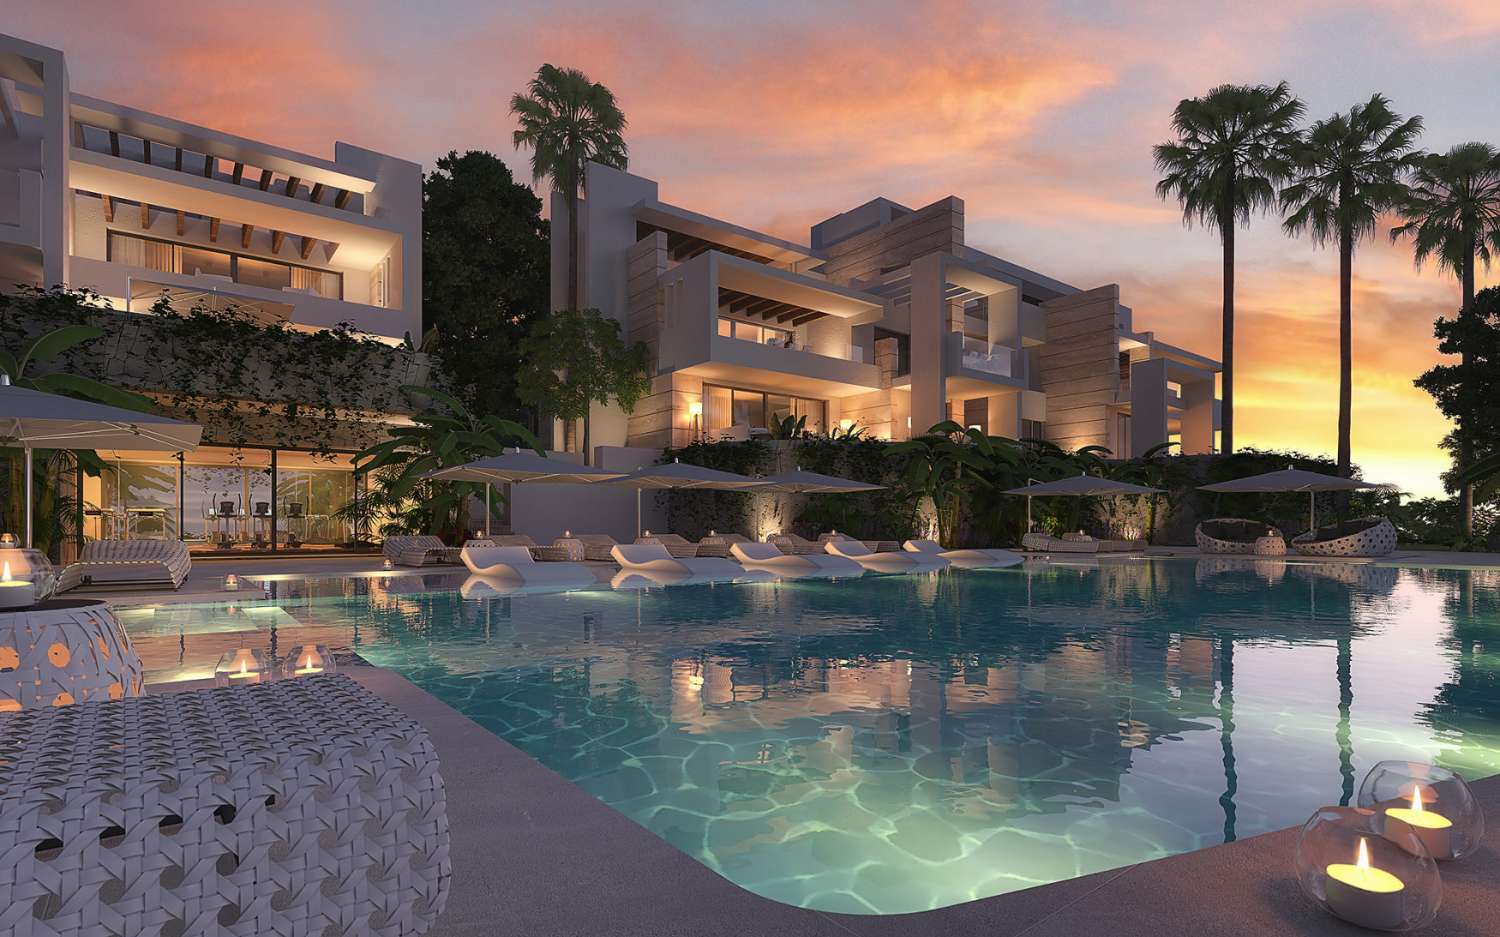 Mooi luxe appartement in woonwijk met prachtig uitzicht op de zee op een paar minuten van Marbella